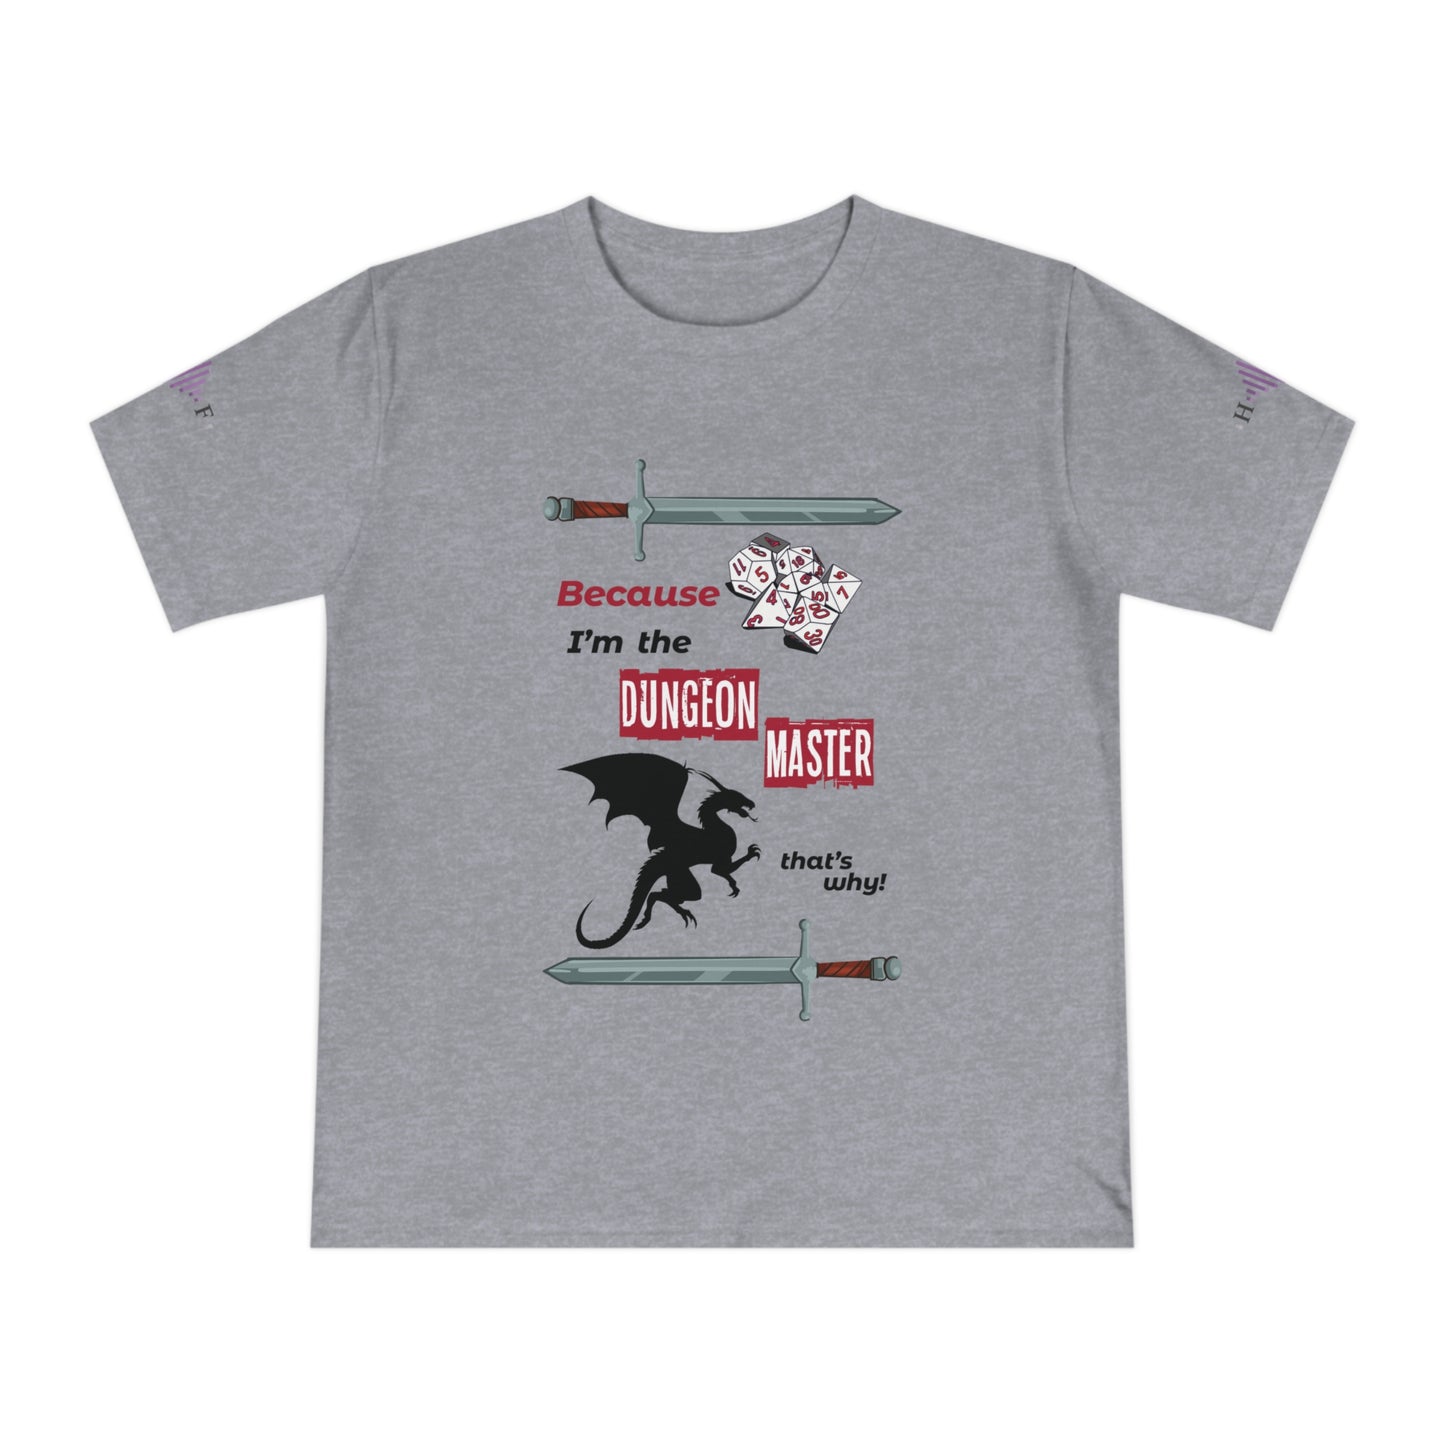 DM knows best! - Unisex Classic Jersey T-shirt